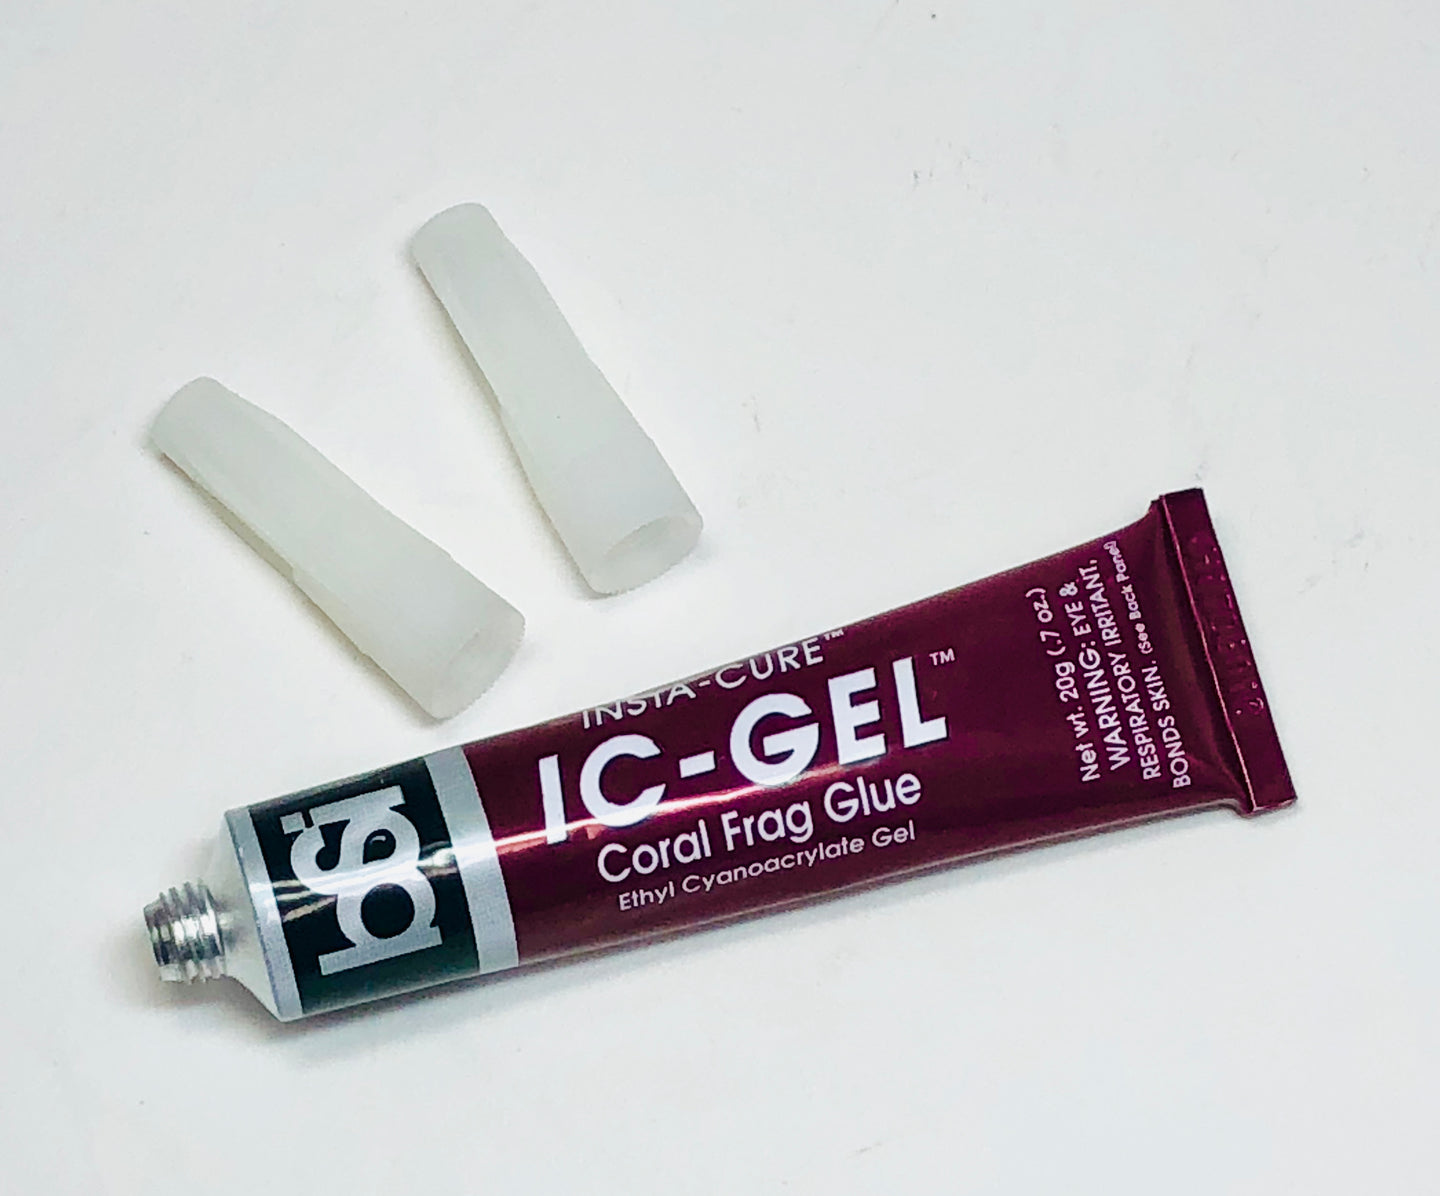 BSI 116 IC-GEL Ethyl Cyanoacrylate Gel Tube 20g